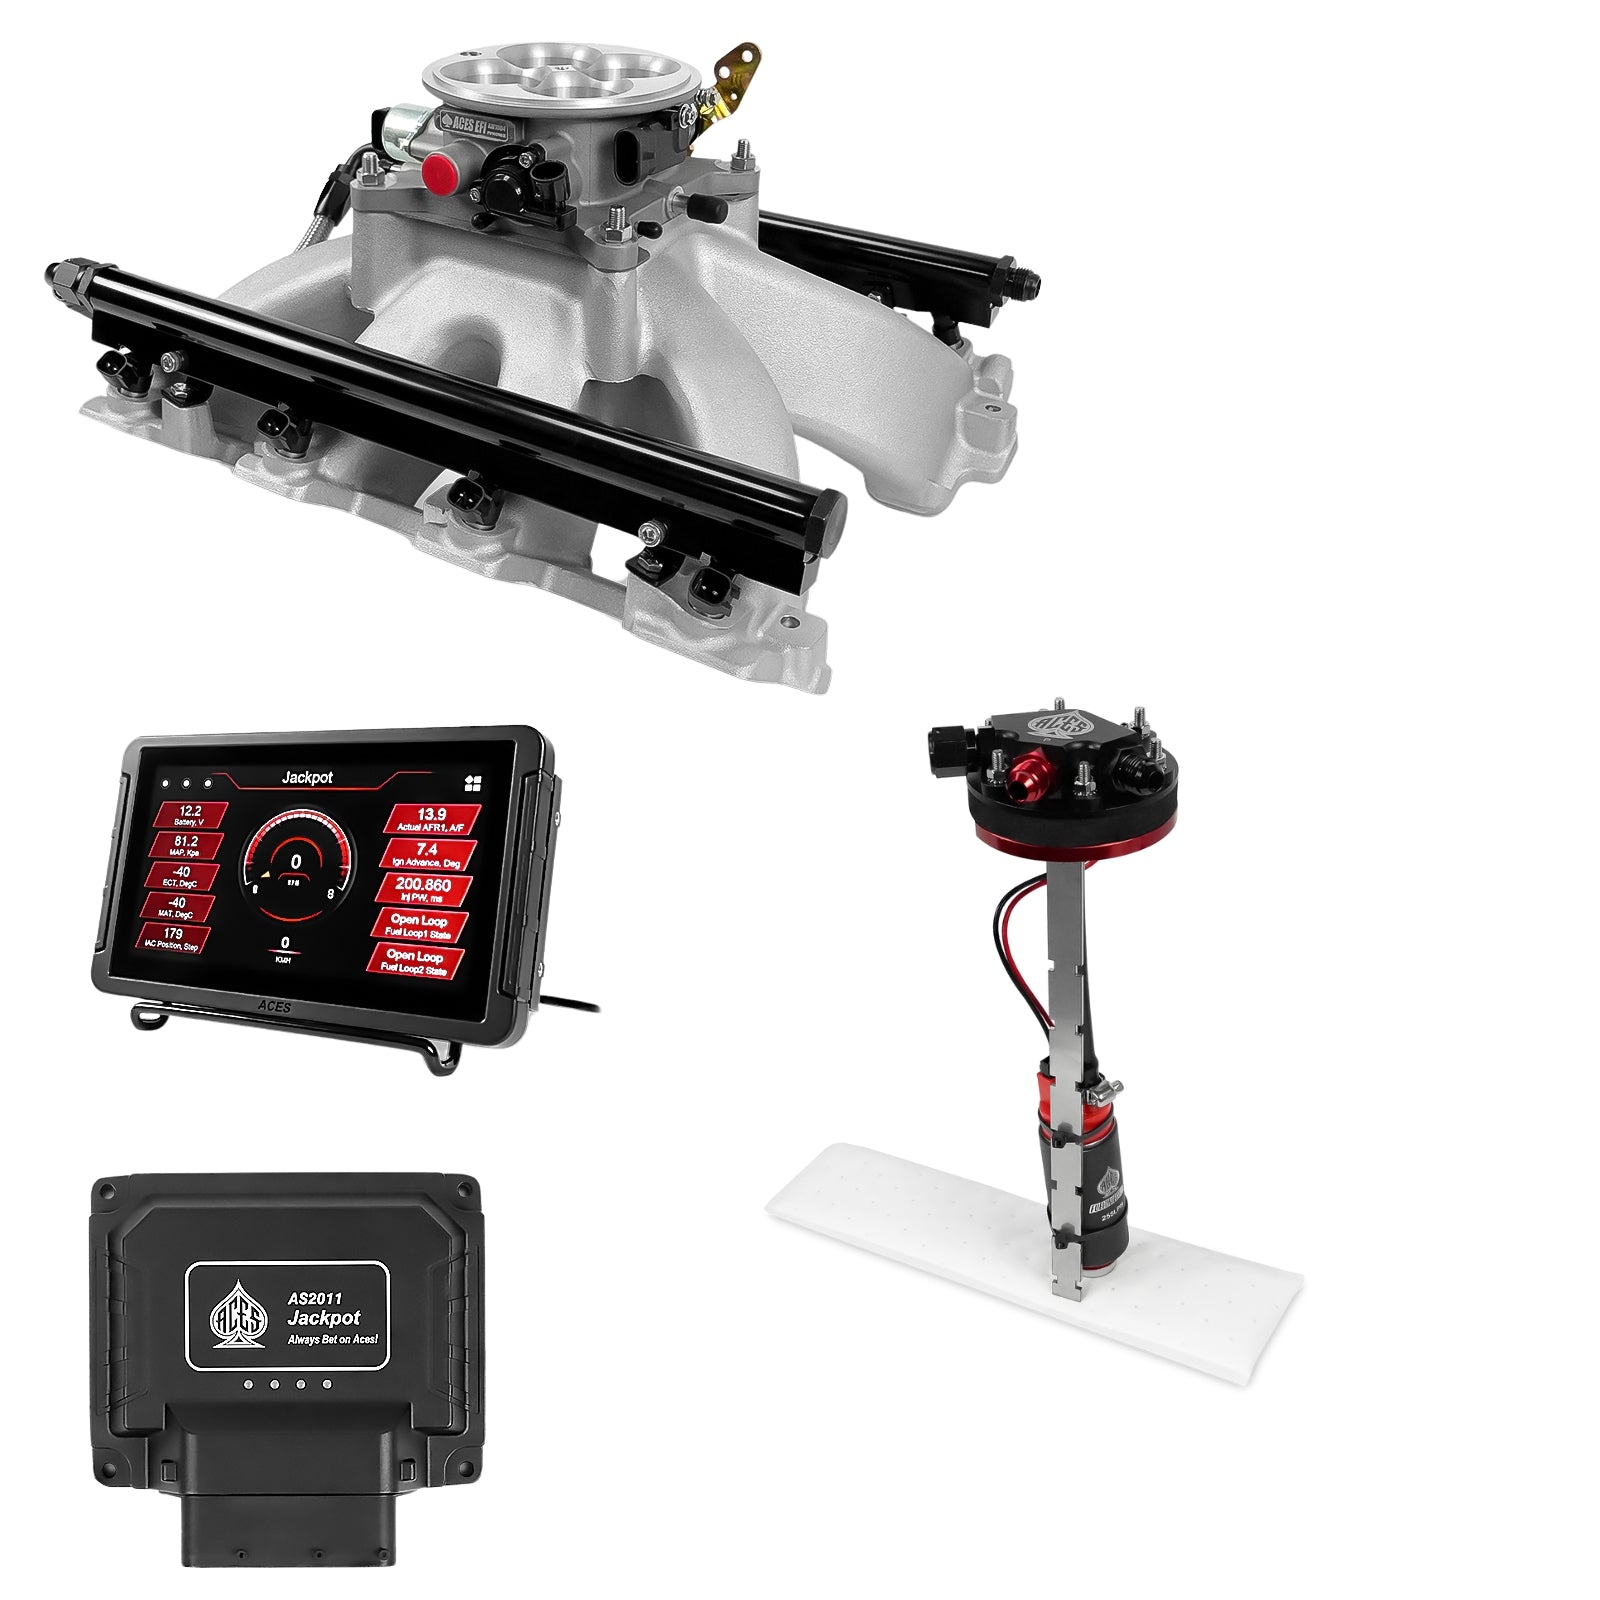 Jackpot LS & LS Pro Master Kits with Tight Fit In-Tank Pump Module